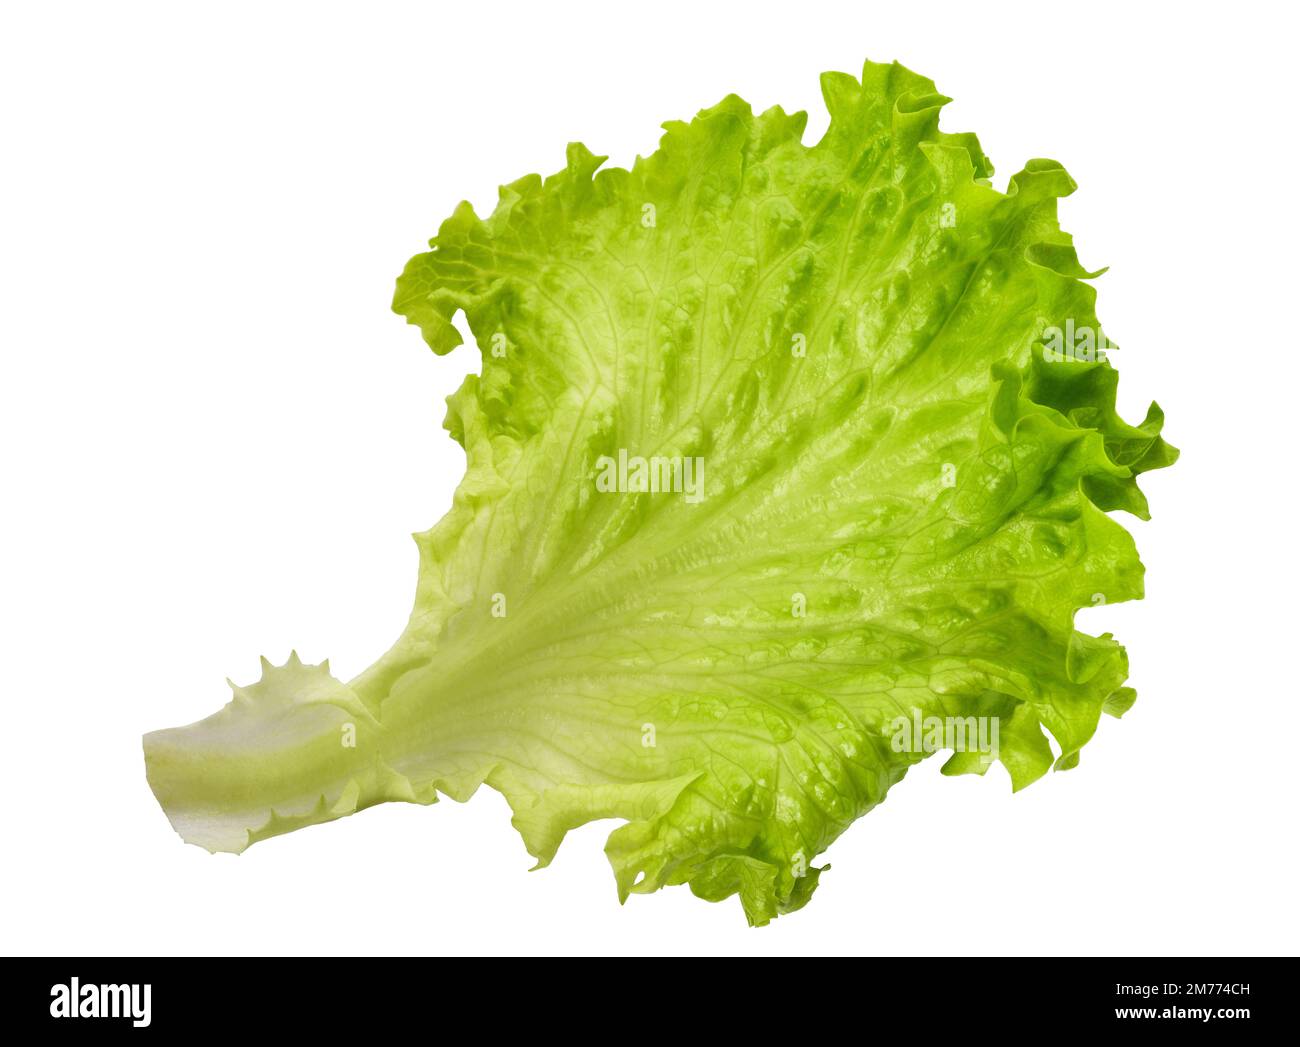 Salatsalat isoliert auf weißem Hintergrund Stockfoto